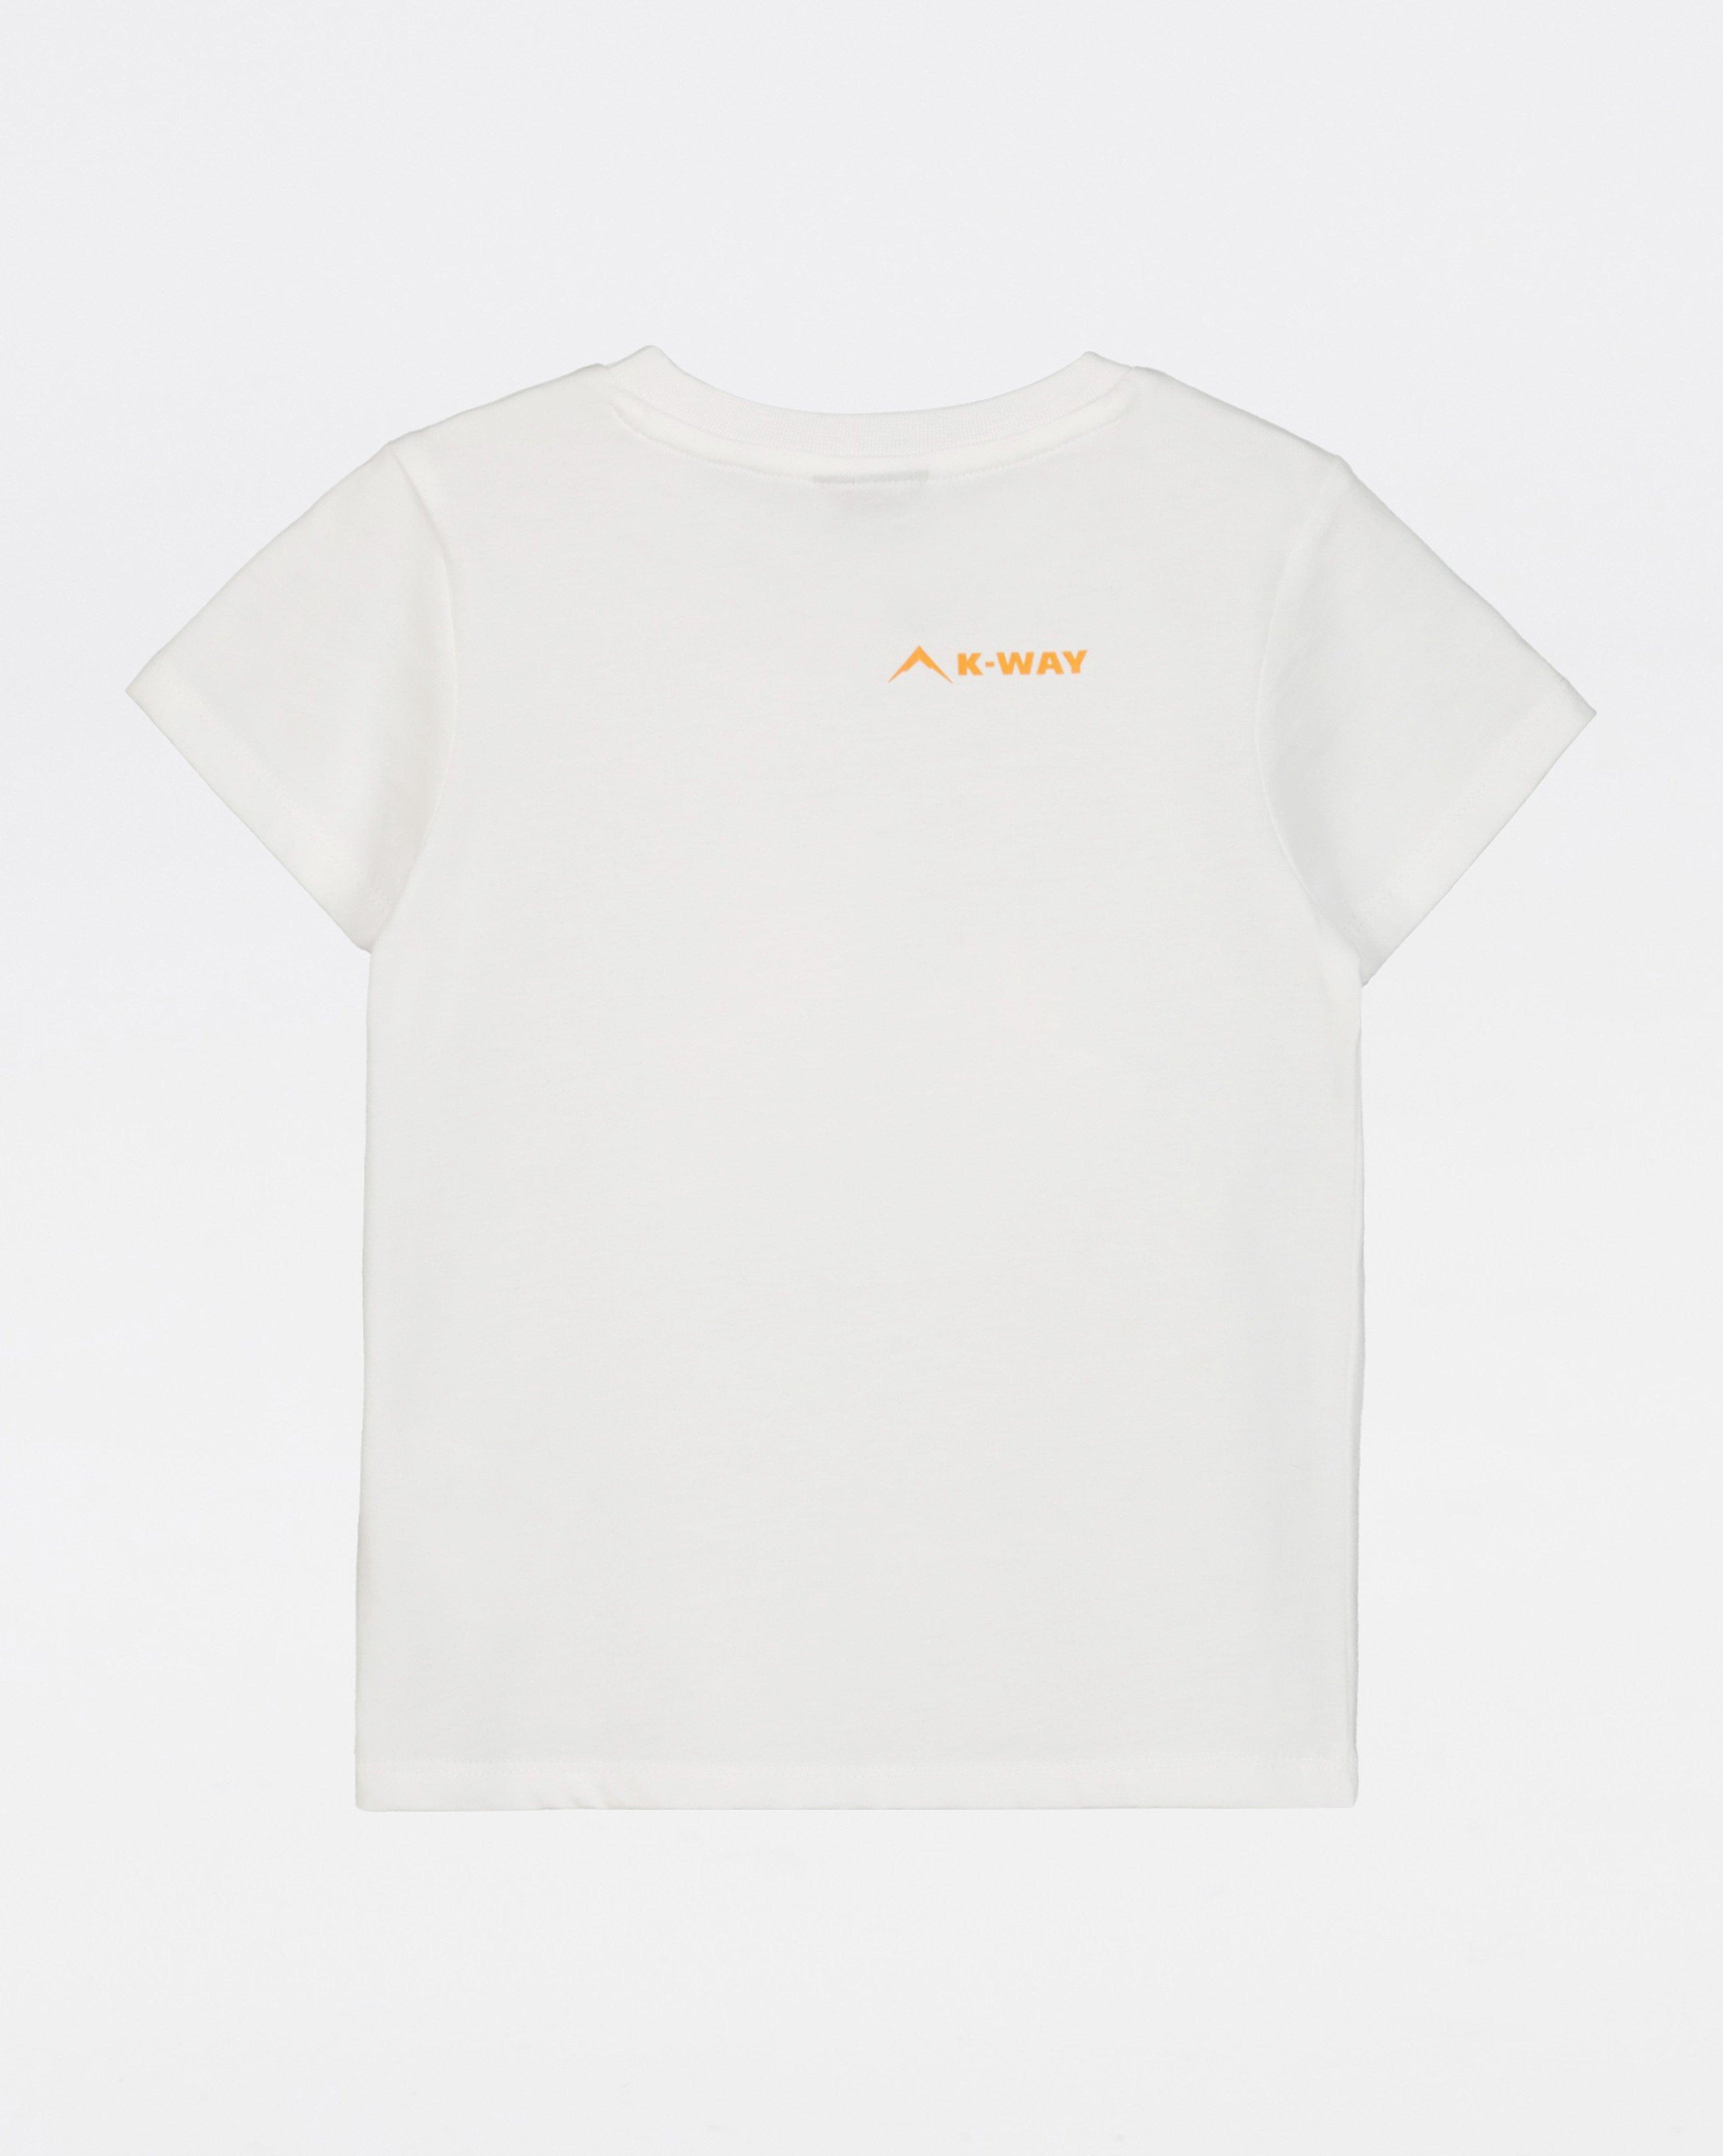 K-Way Kids Graphic T-shirt -  White